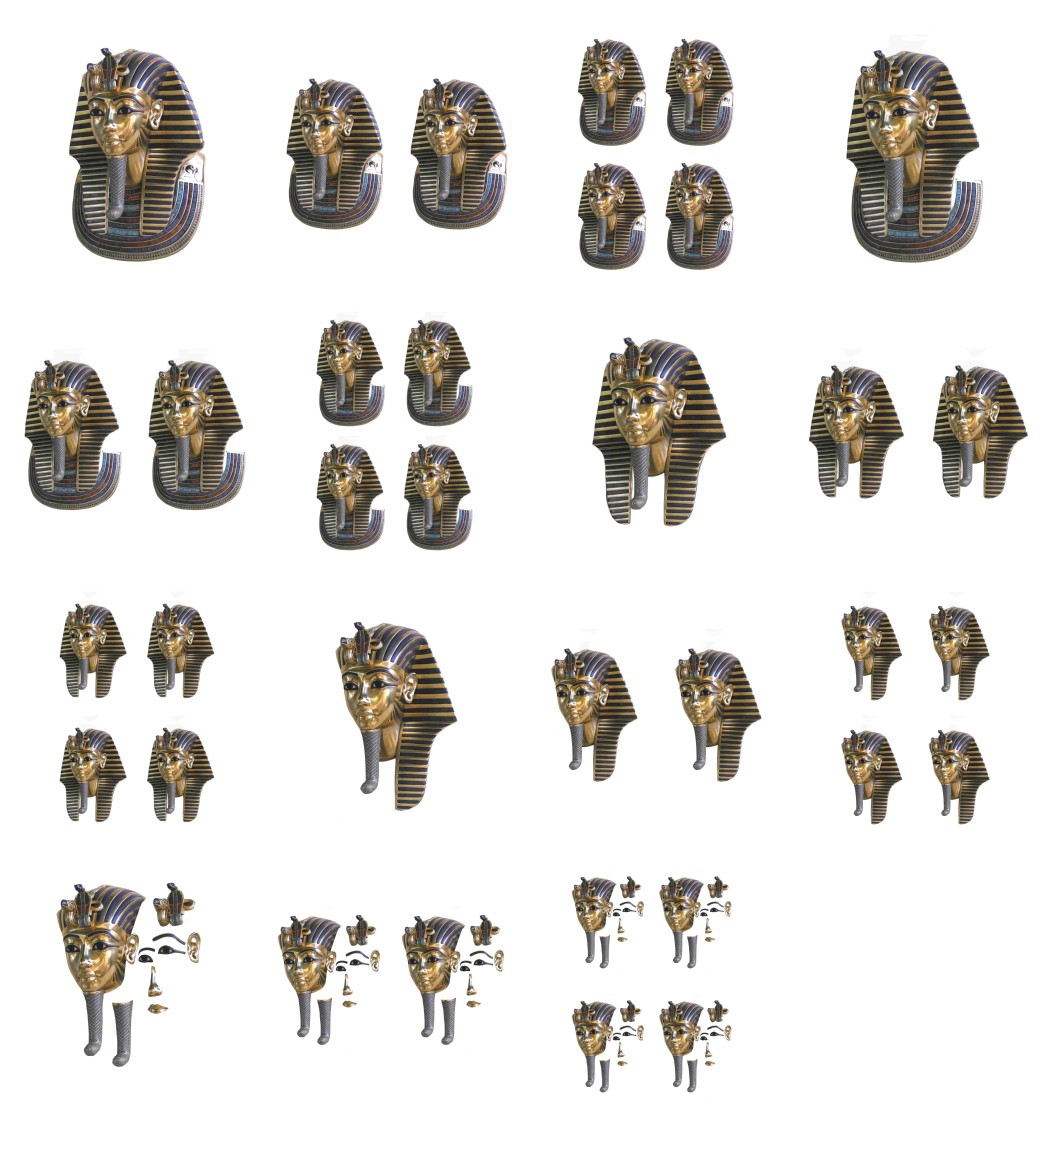 Tutankhamin 3D Set Sideways - 15 Pages to DOWNLOAD